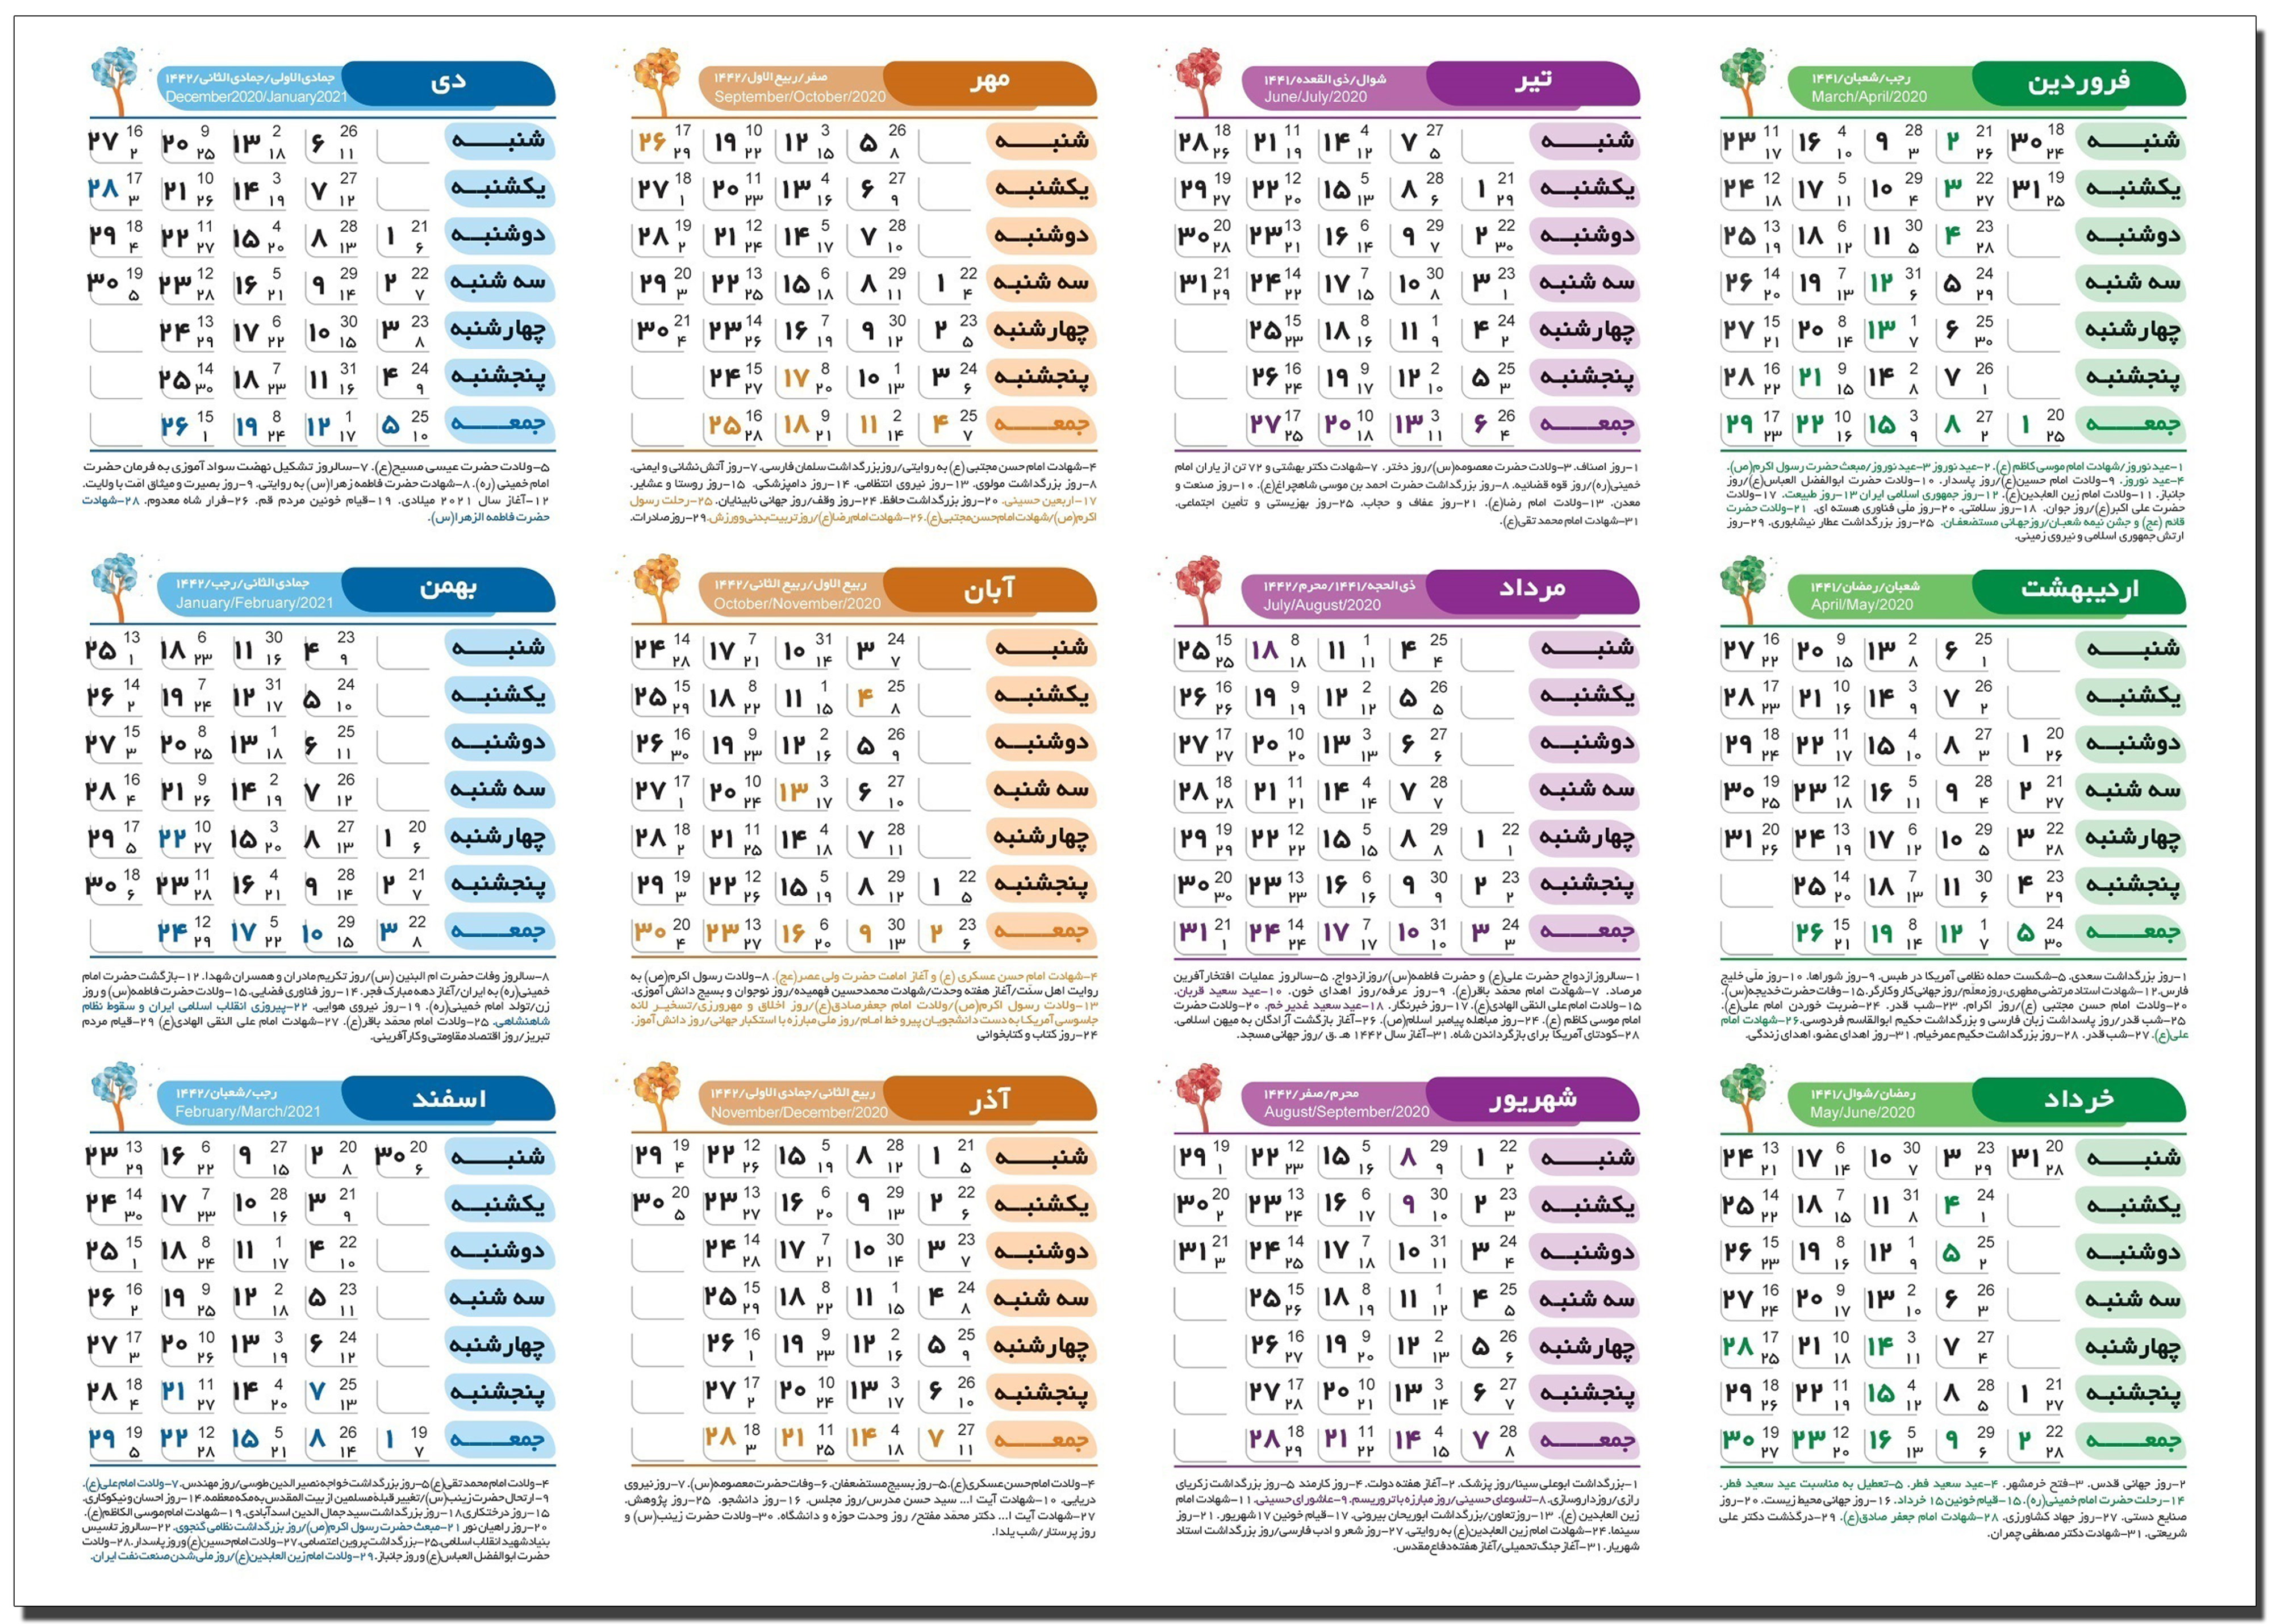 دانلود رایگان تقویم 1399 برای دکستاب با فرمت بهتر از PDF با کیفیت عالی